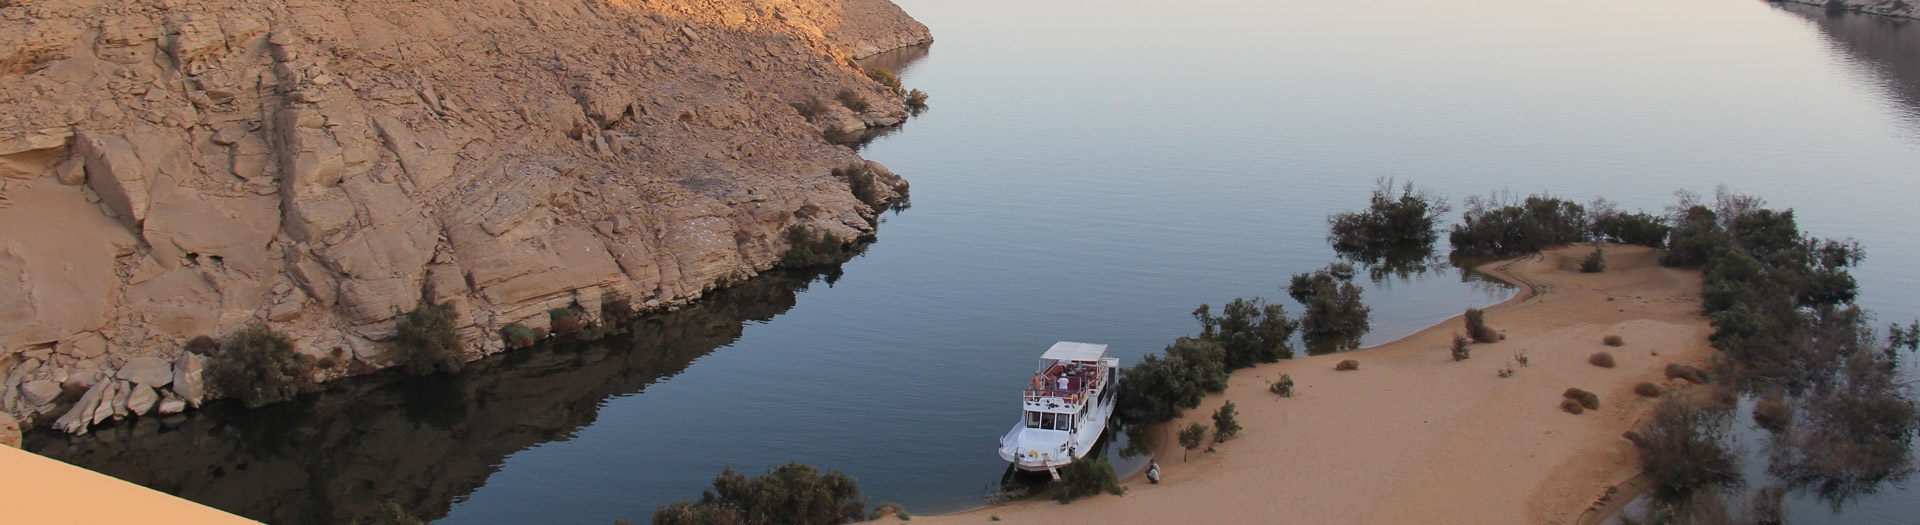 Les charmes du lac Nasser